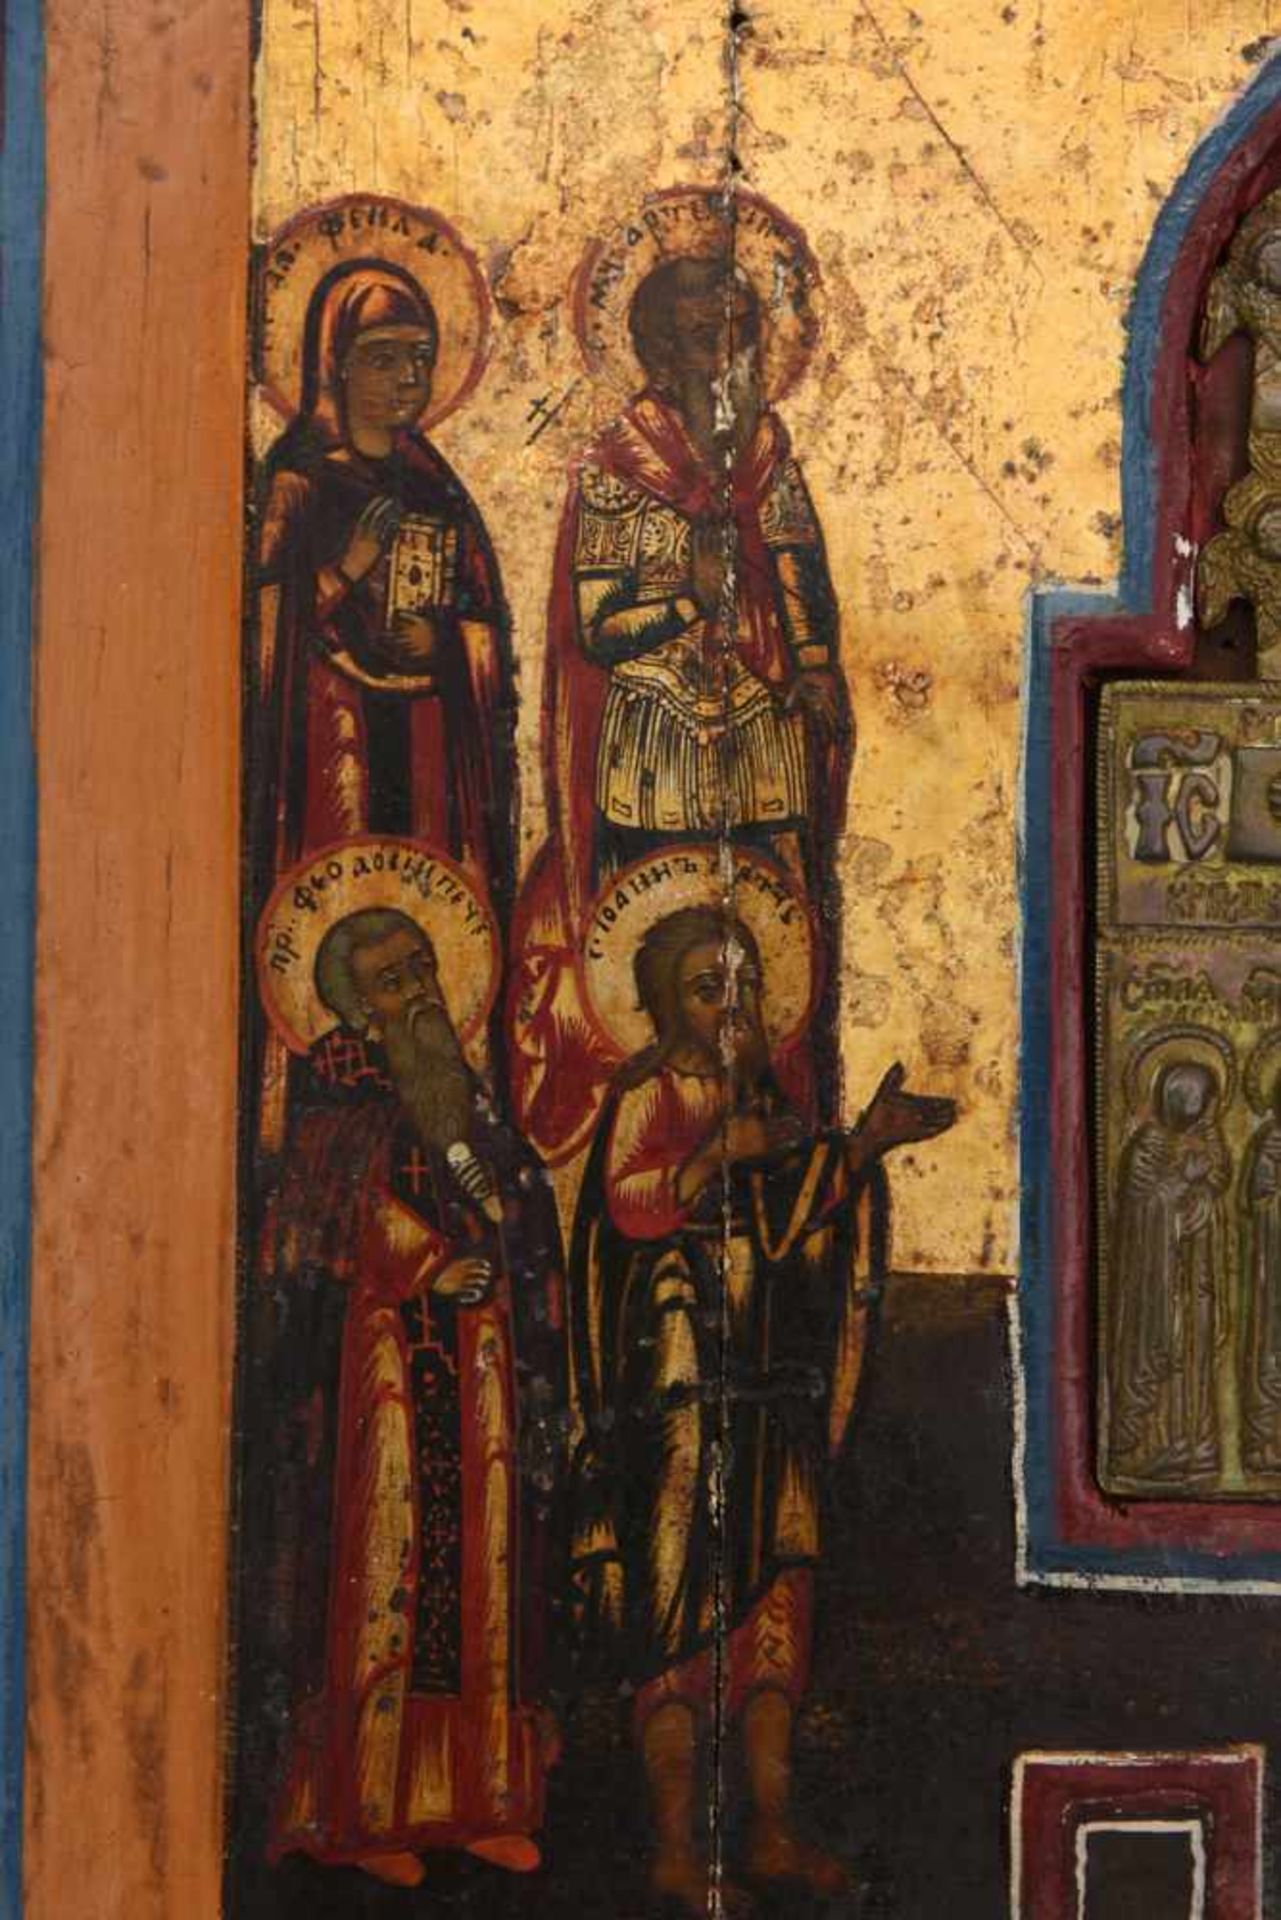 IKONE, Russisch- orthodox, wohl 18. Jh. Eingearbeitetes Kruzifix mit predellaartigem Unterbau. - Bild 5 aus 6